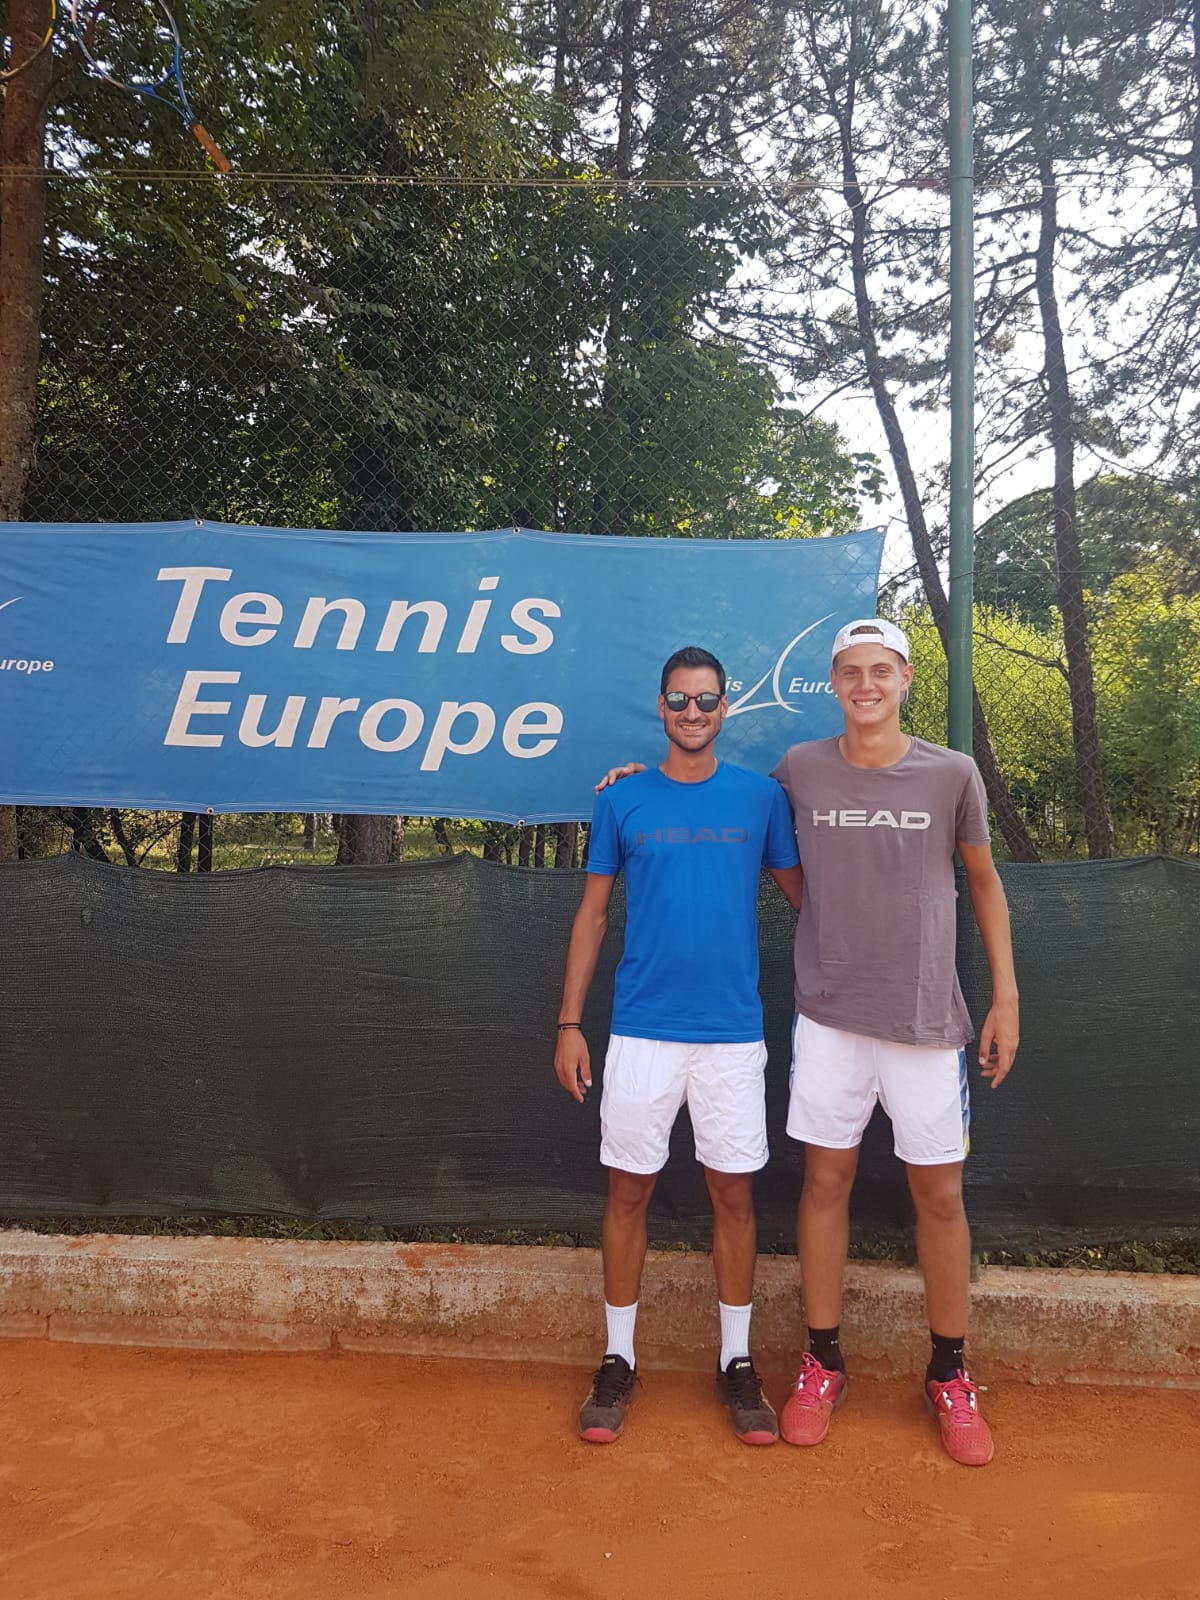 MONDO ACCADEMIA. Matteo Giordano al torneo Tennis Europe di Montenegro